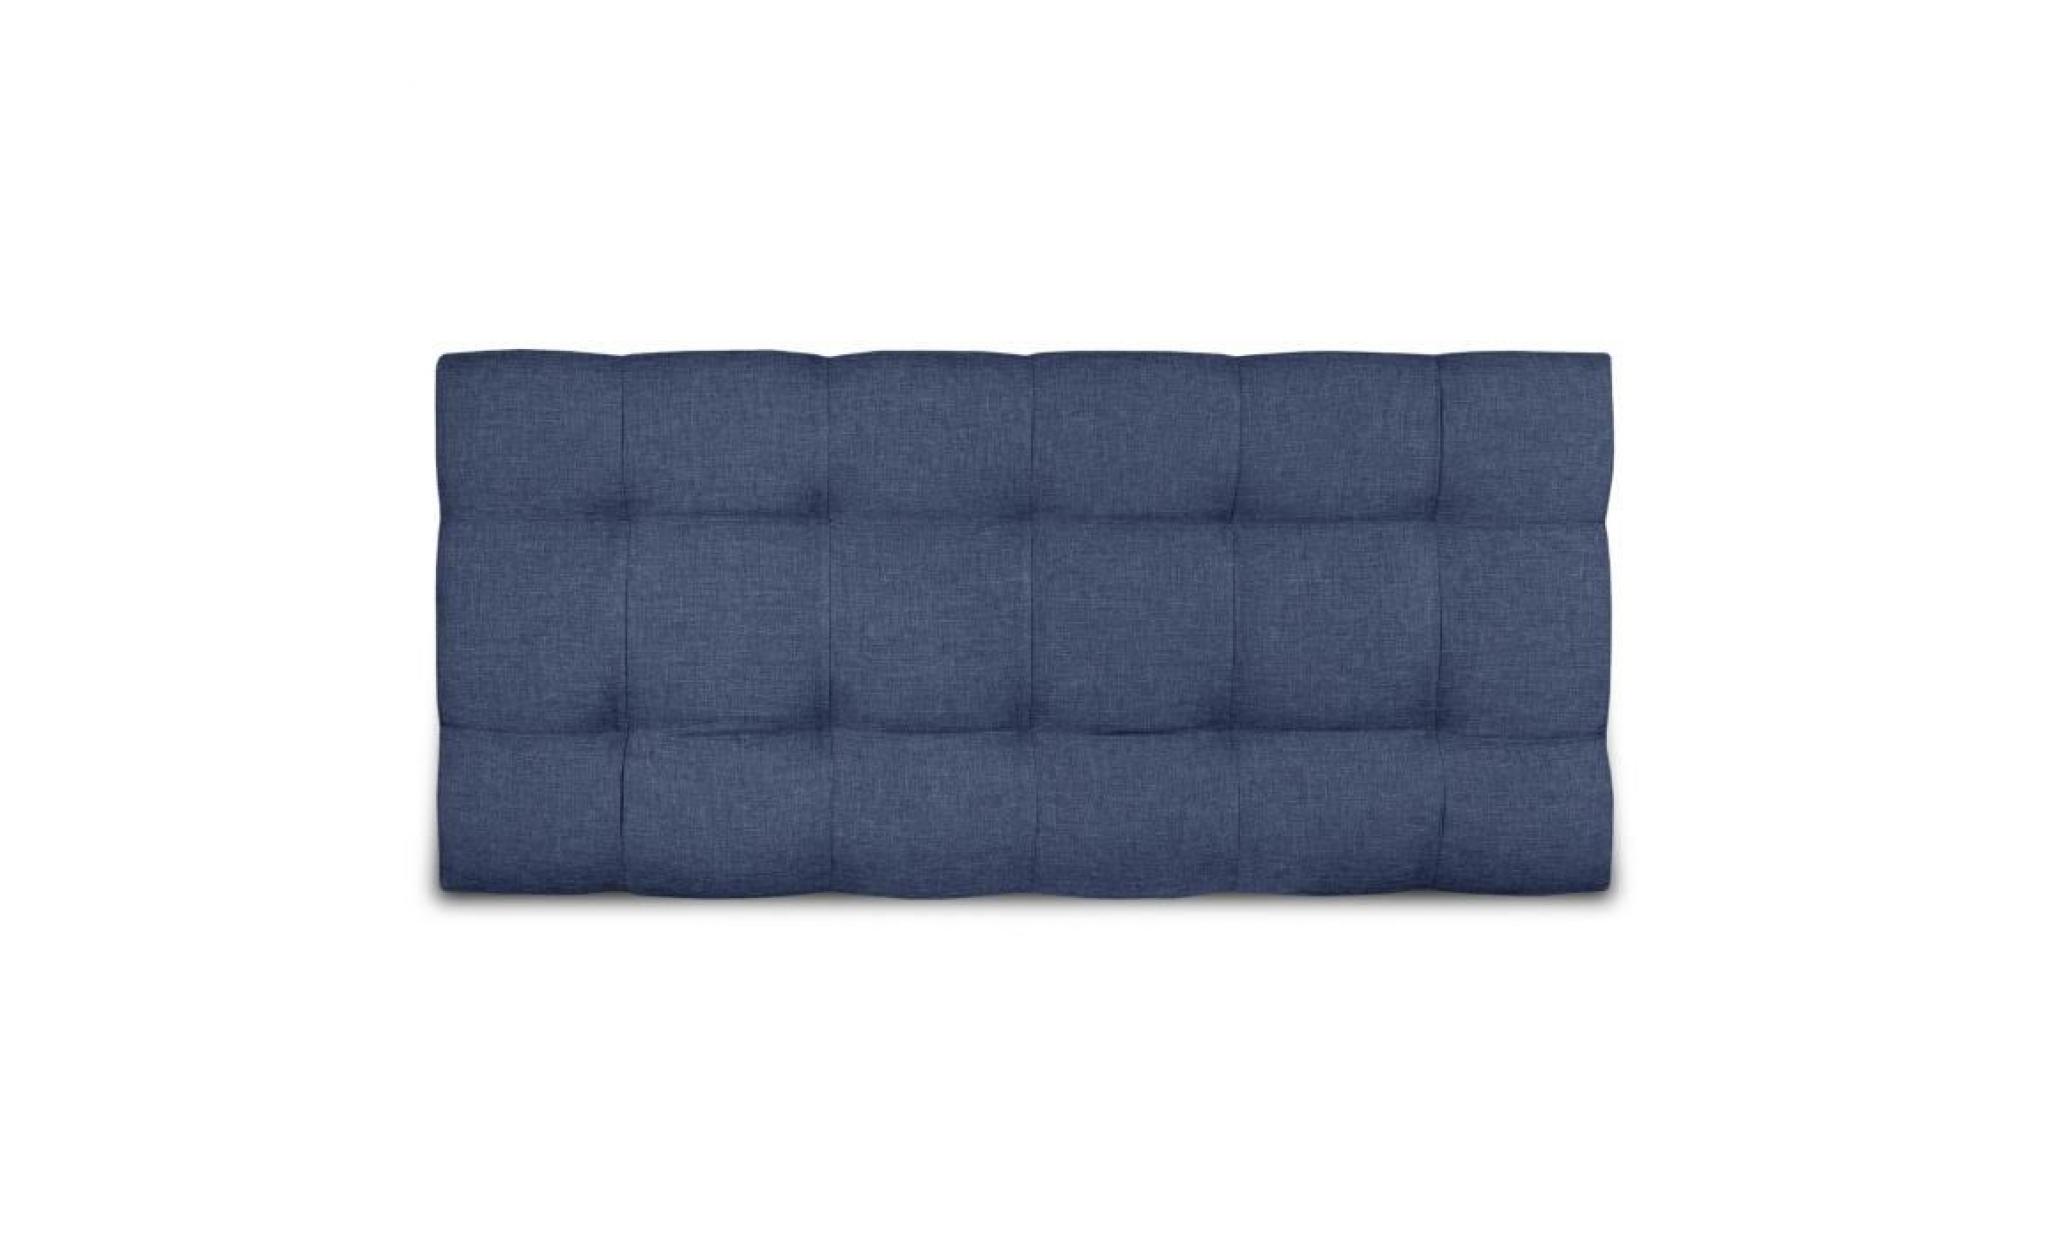 finlandek tête de lit kyna classique   tissu bleu denim   l 140 cm pas cher